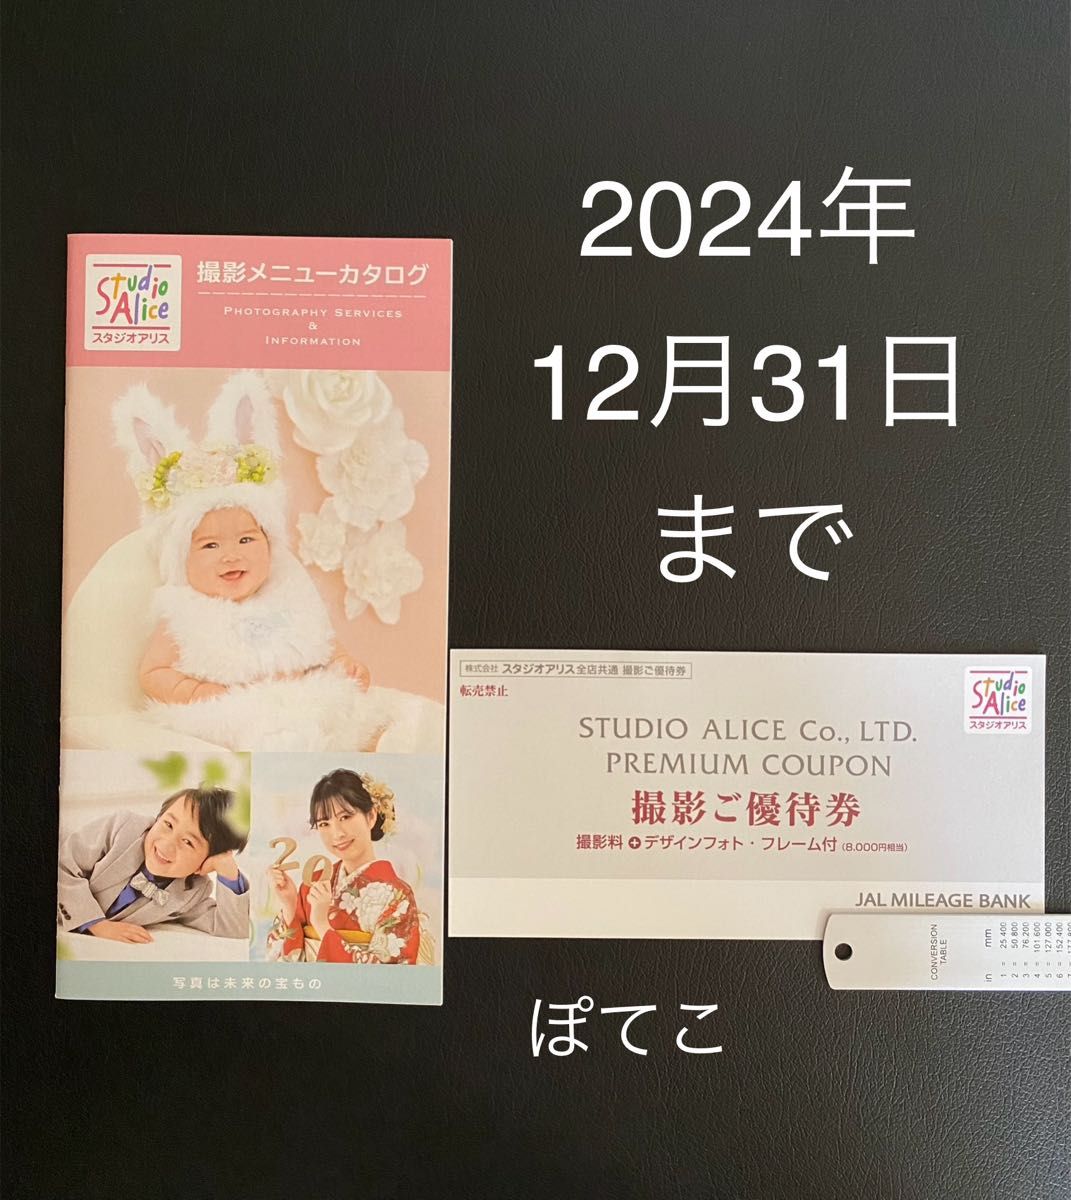 スタジオアリス 撮影ご優待券  JALマイレージバンク 8000円相当 1枚 2024年12月31日まで有効